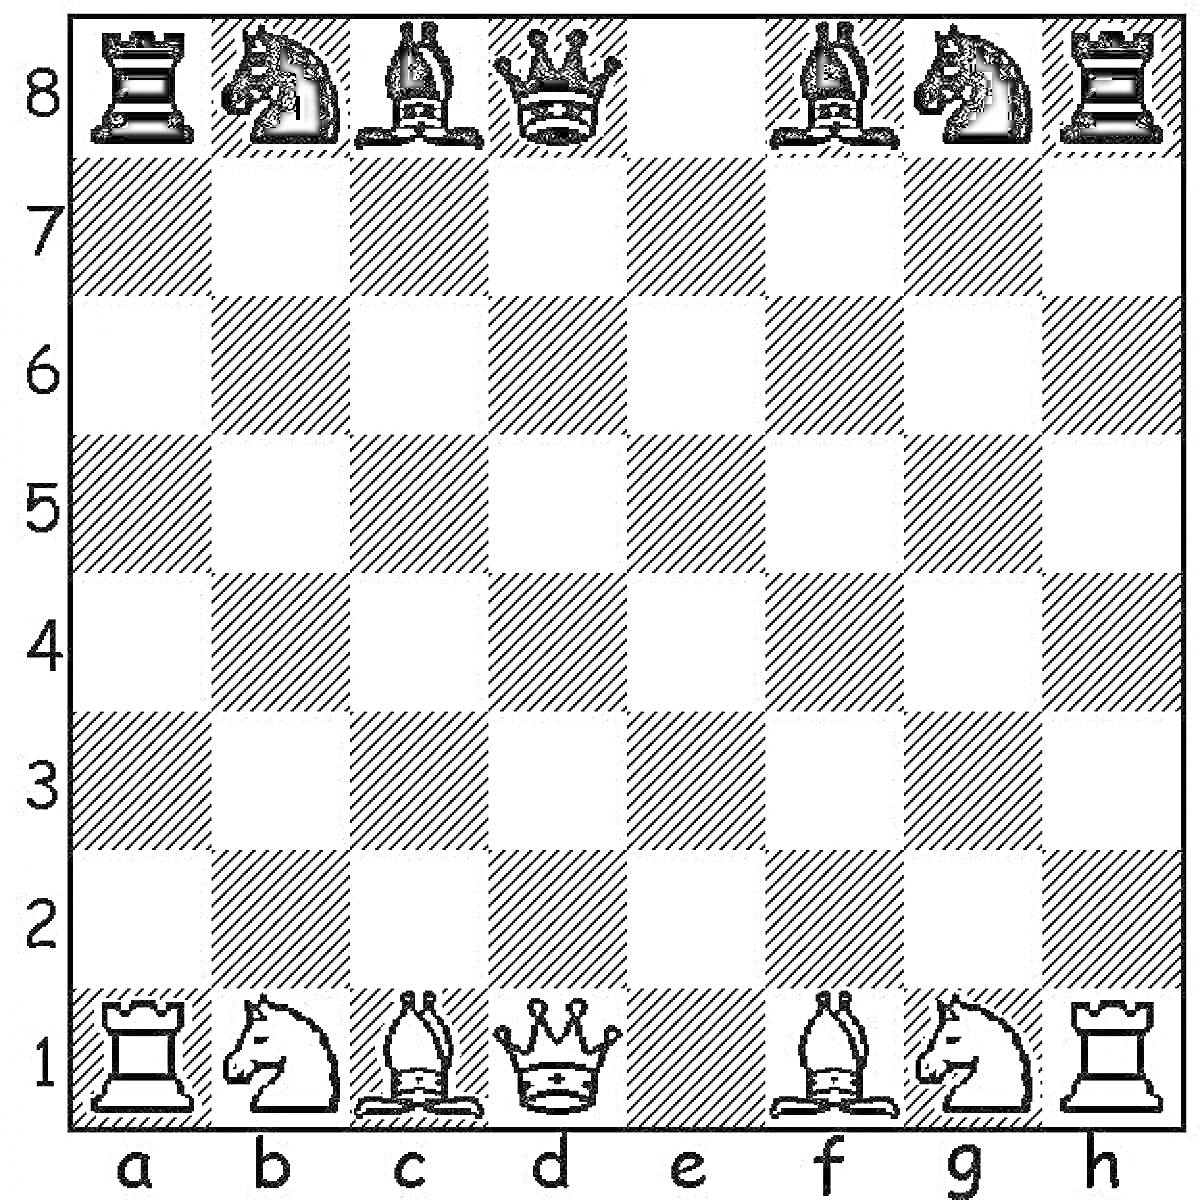 Раскраска Шахматная доска с белыми и чёрными фигурами (ладья, конь, слон, ферзь, король, слон, конь, ладья) по краям